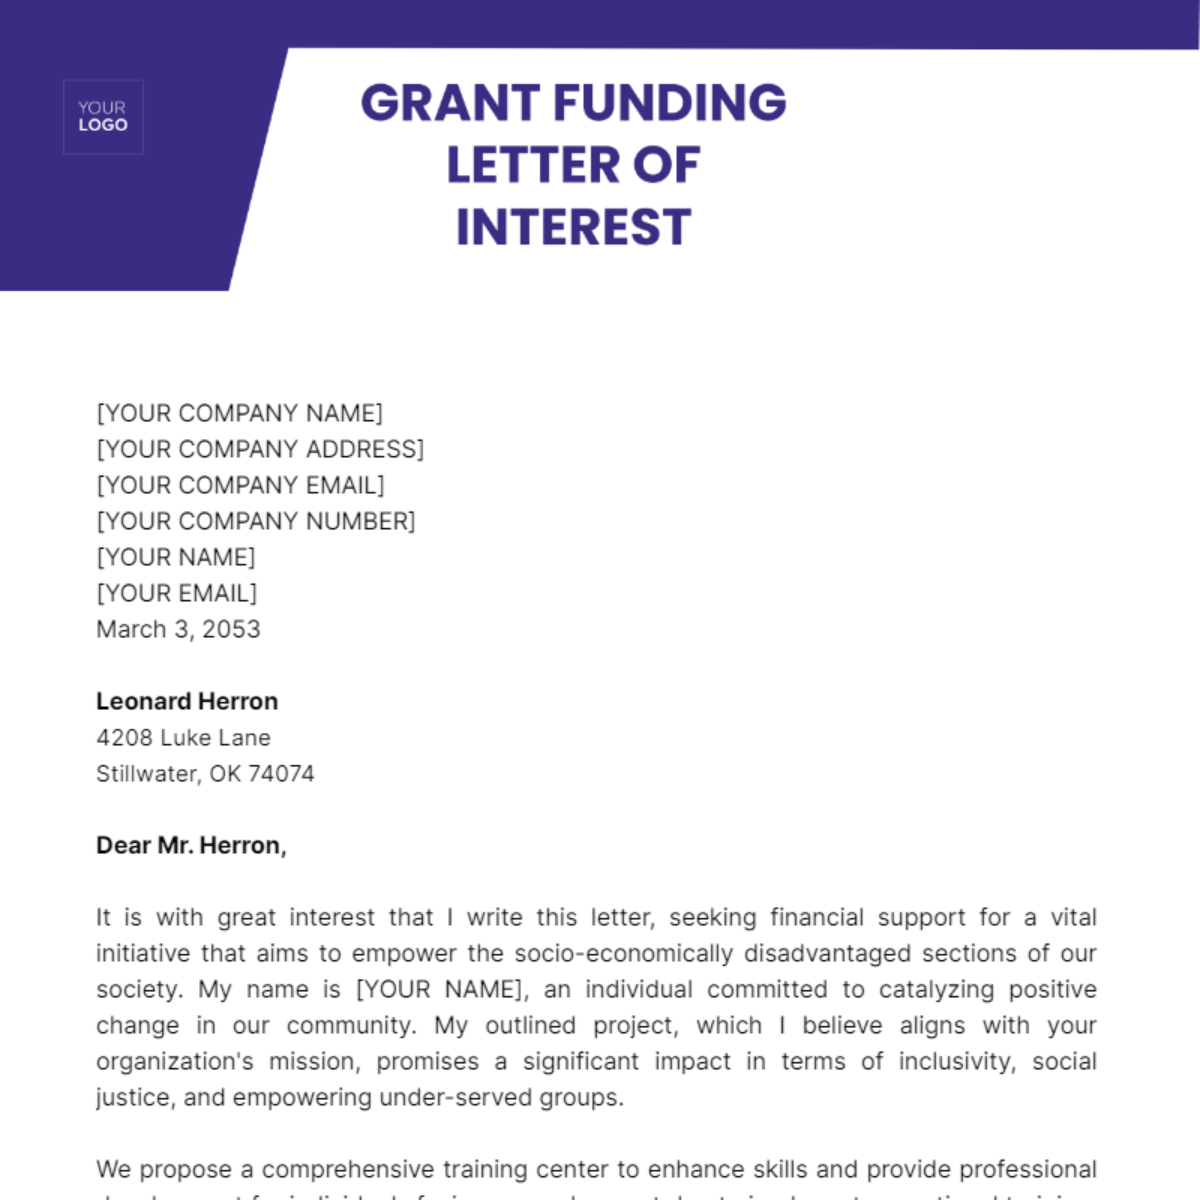 Grant Funding Letter of Interest Template